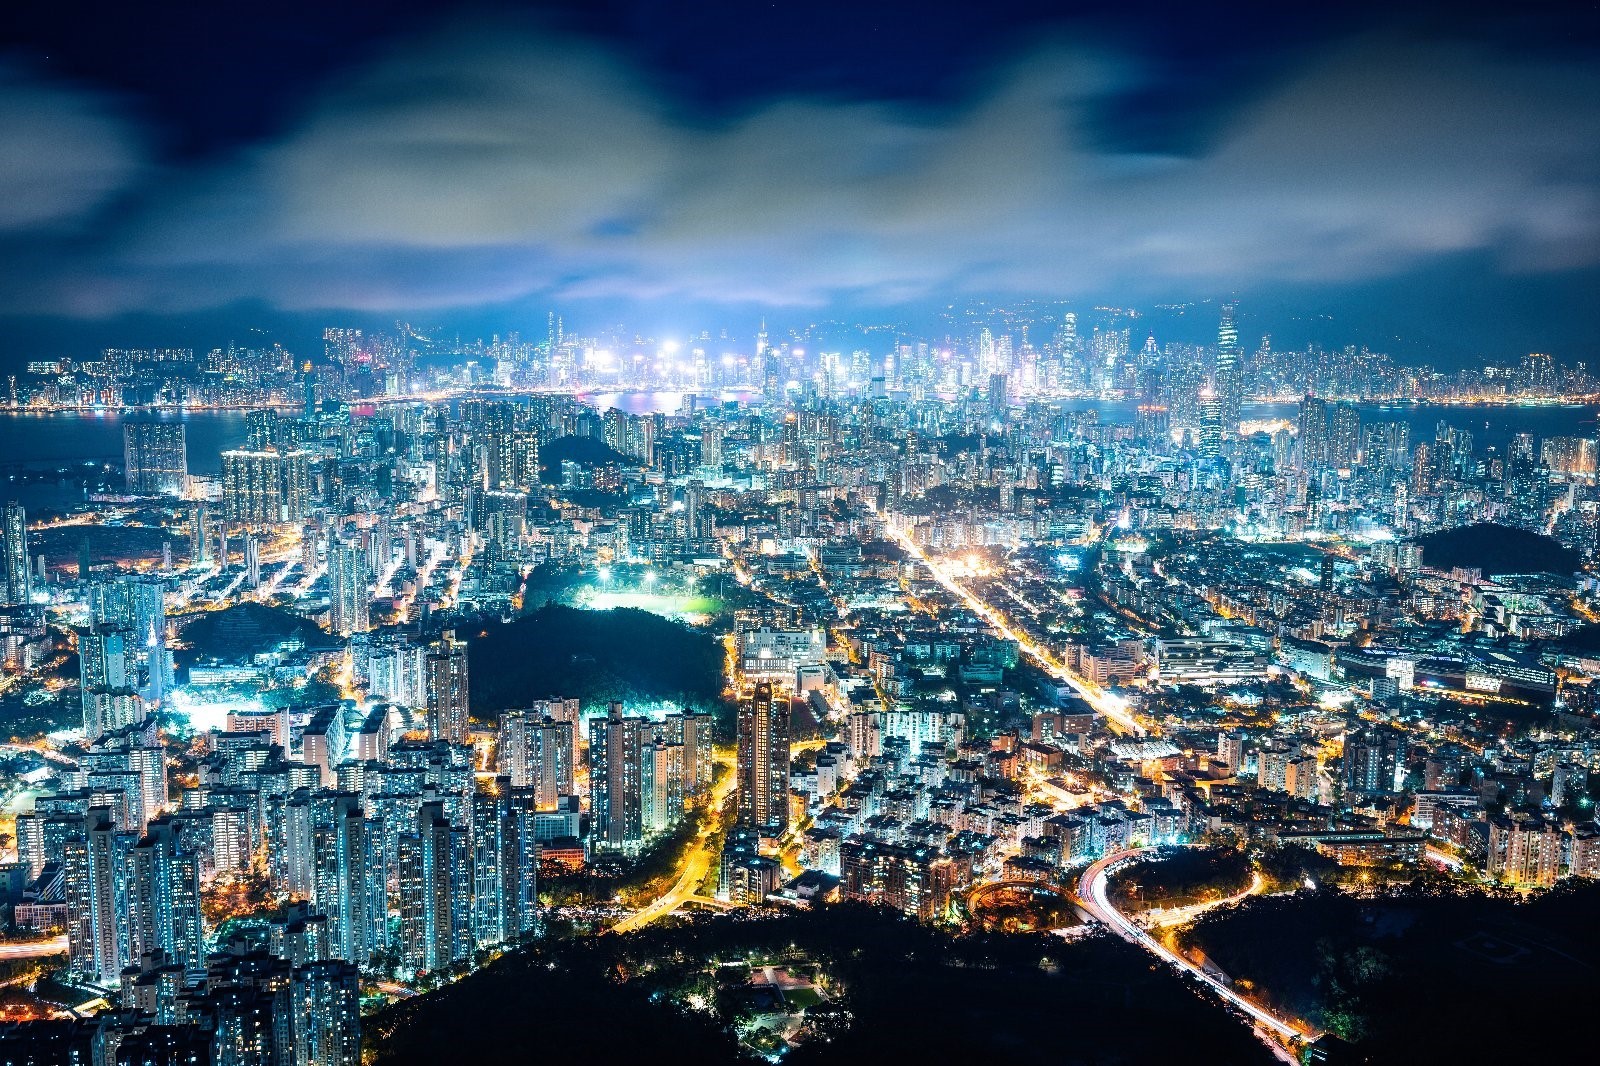 100万ドルの夜景都市 香港を捉えた上田晃司の写真展 The Contrast 香港灯り物語 が開催 Spice エンタメ特化型情報メディア スパイス